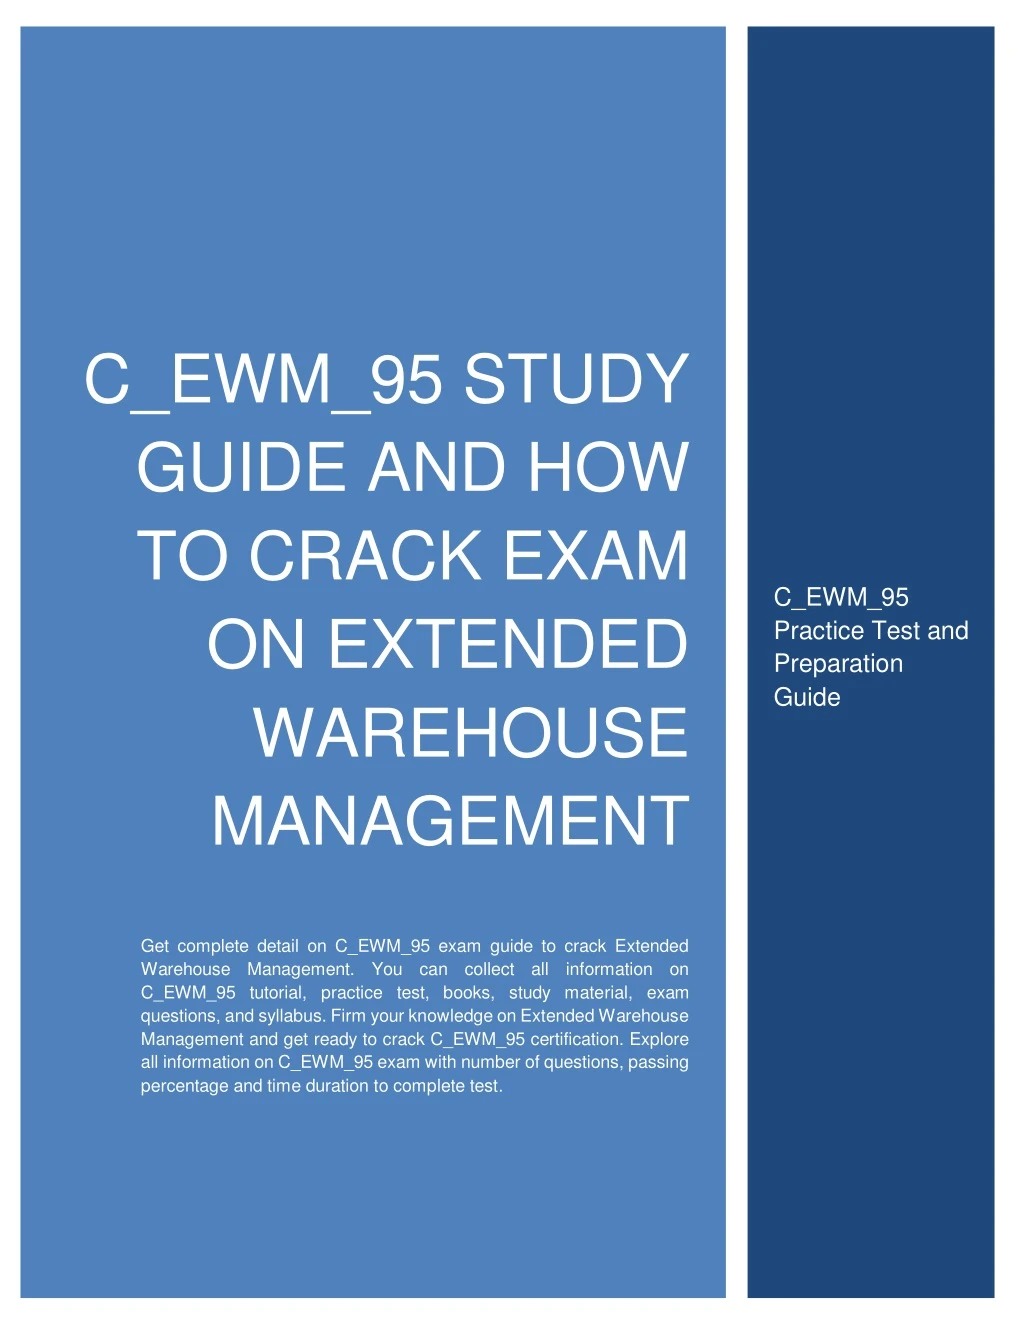 c ewm 95 study guide and how to crack exam